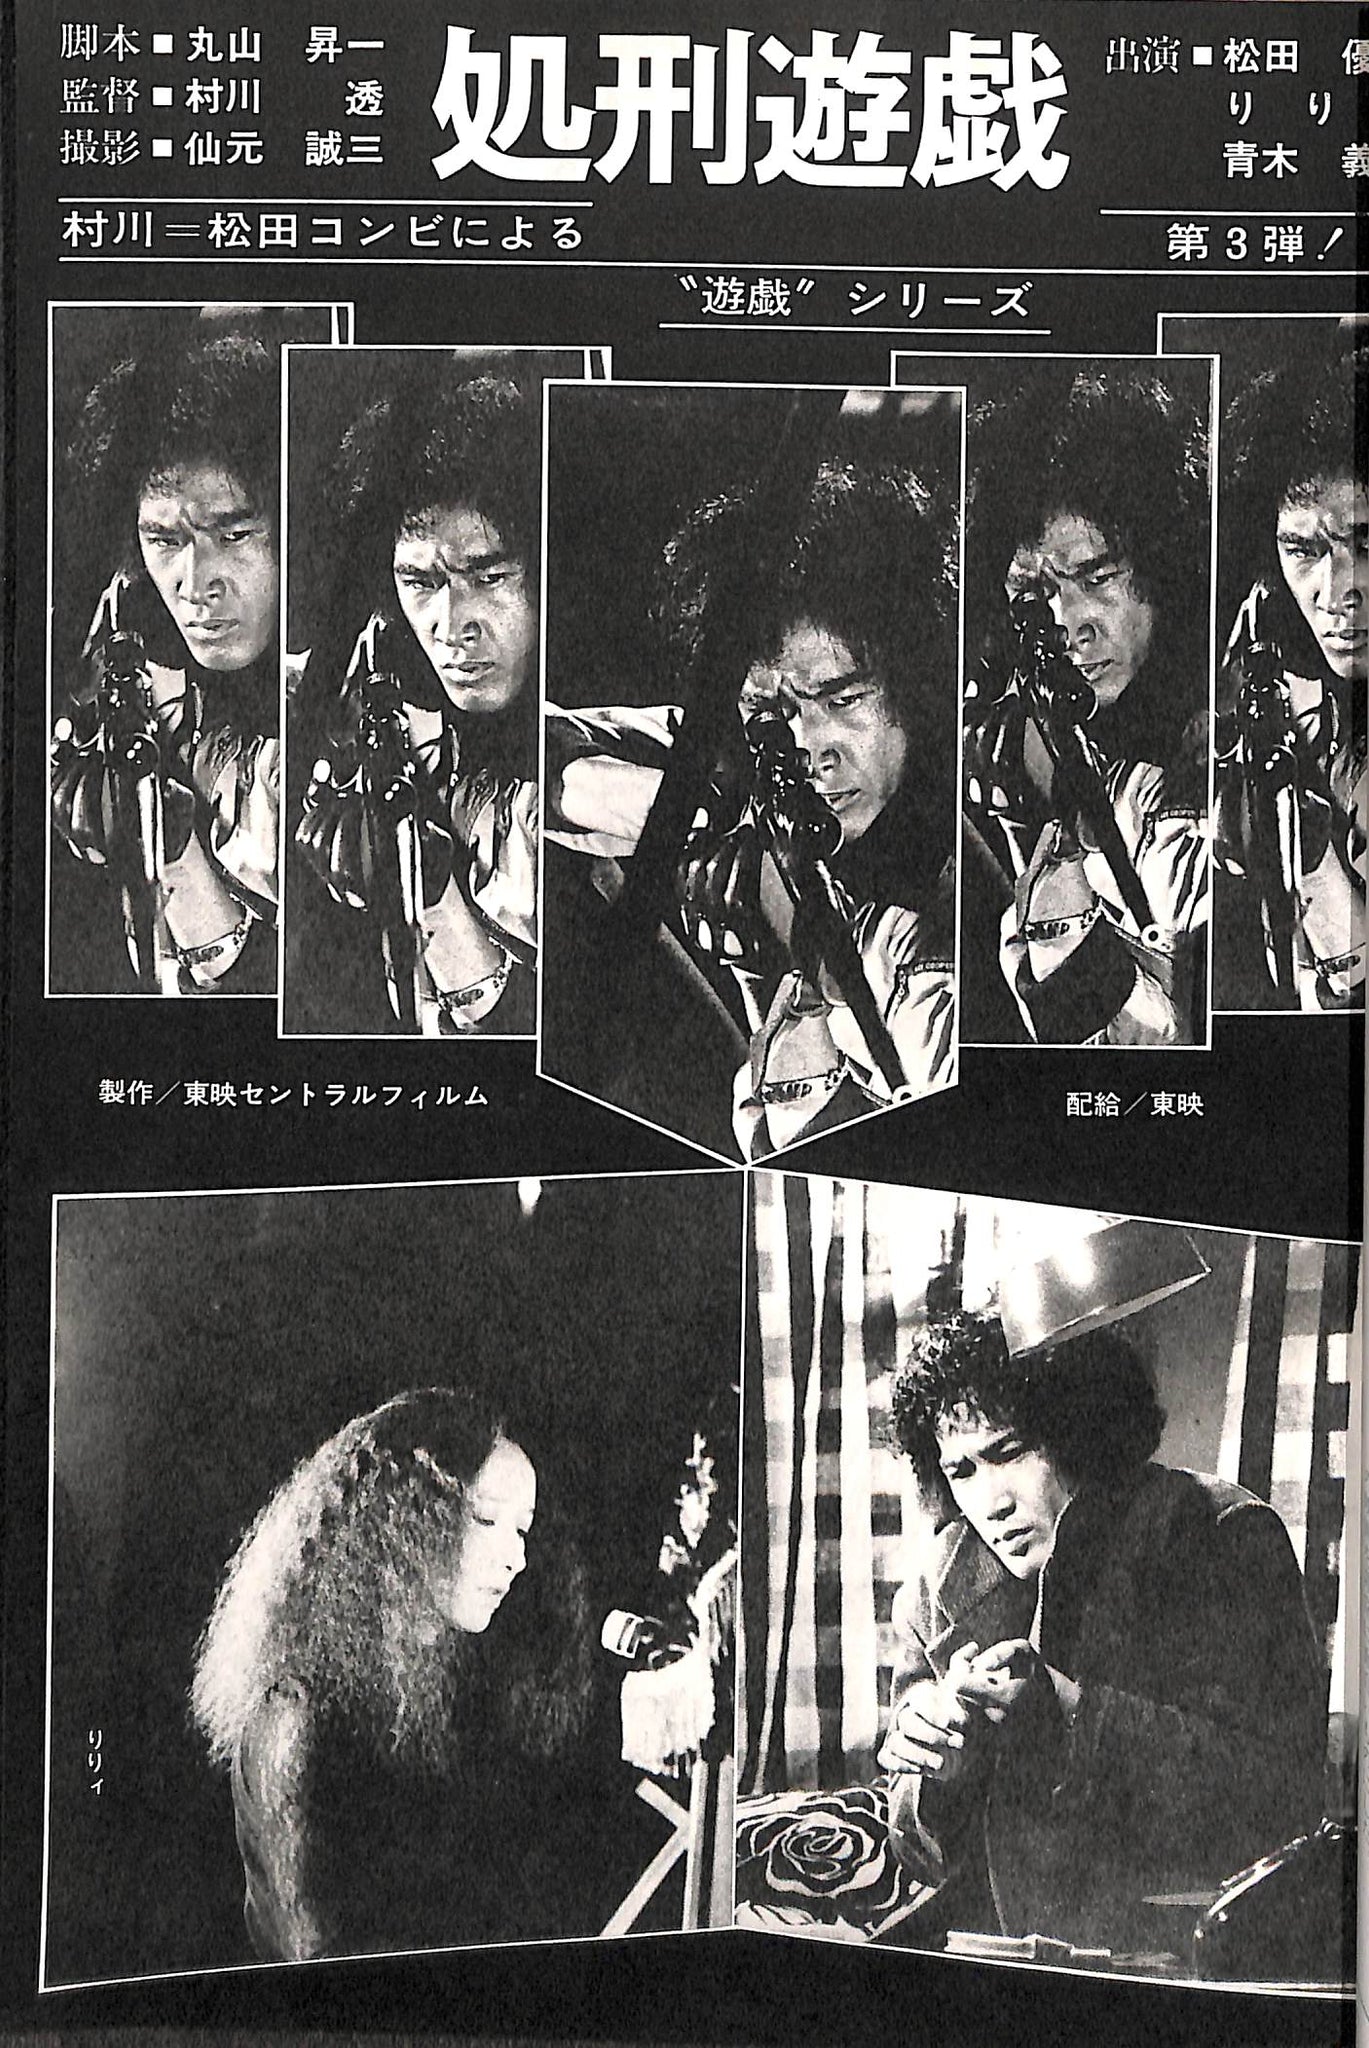 キネマ旬報 1979年12月 上旬号 表紙の映画 :「エアポート '80」(アラン 